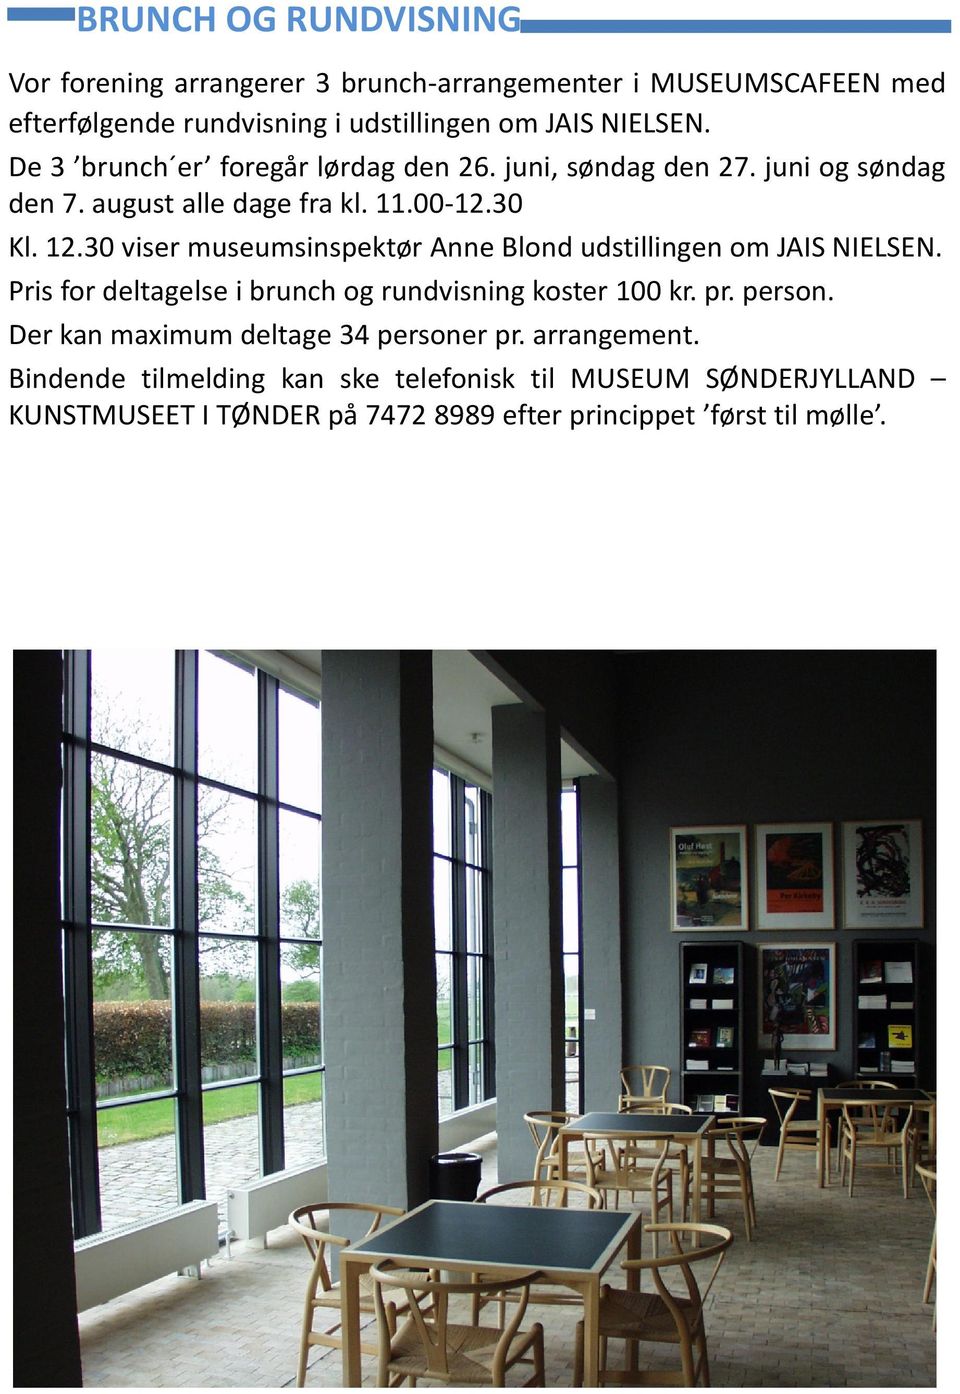 30 Kl. 12.30 viser museumsinspektør Anne Blond udstillingen om JAIS NIELSEN. Pris for deltagelse i brunch og rundvisning koster 100 kr. pr. person.